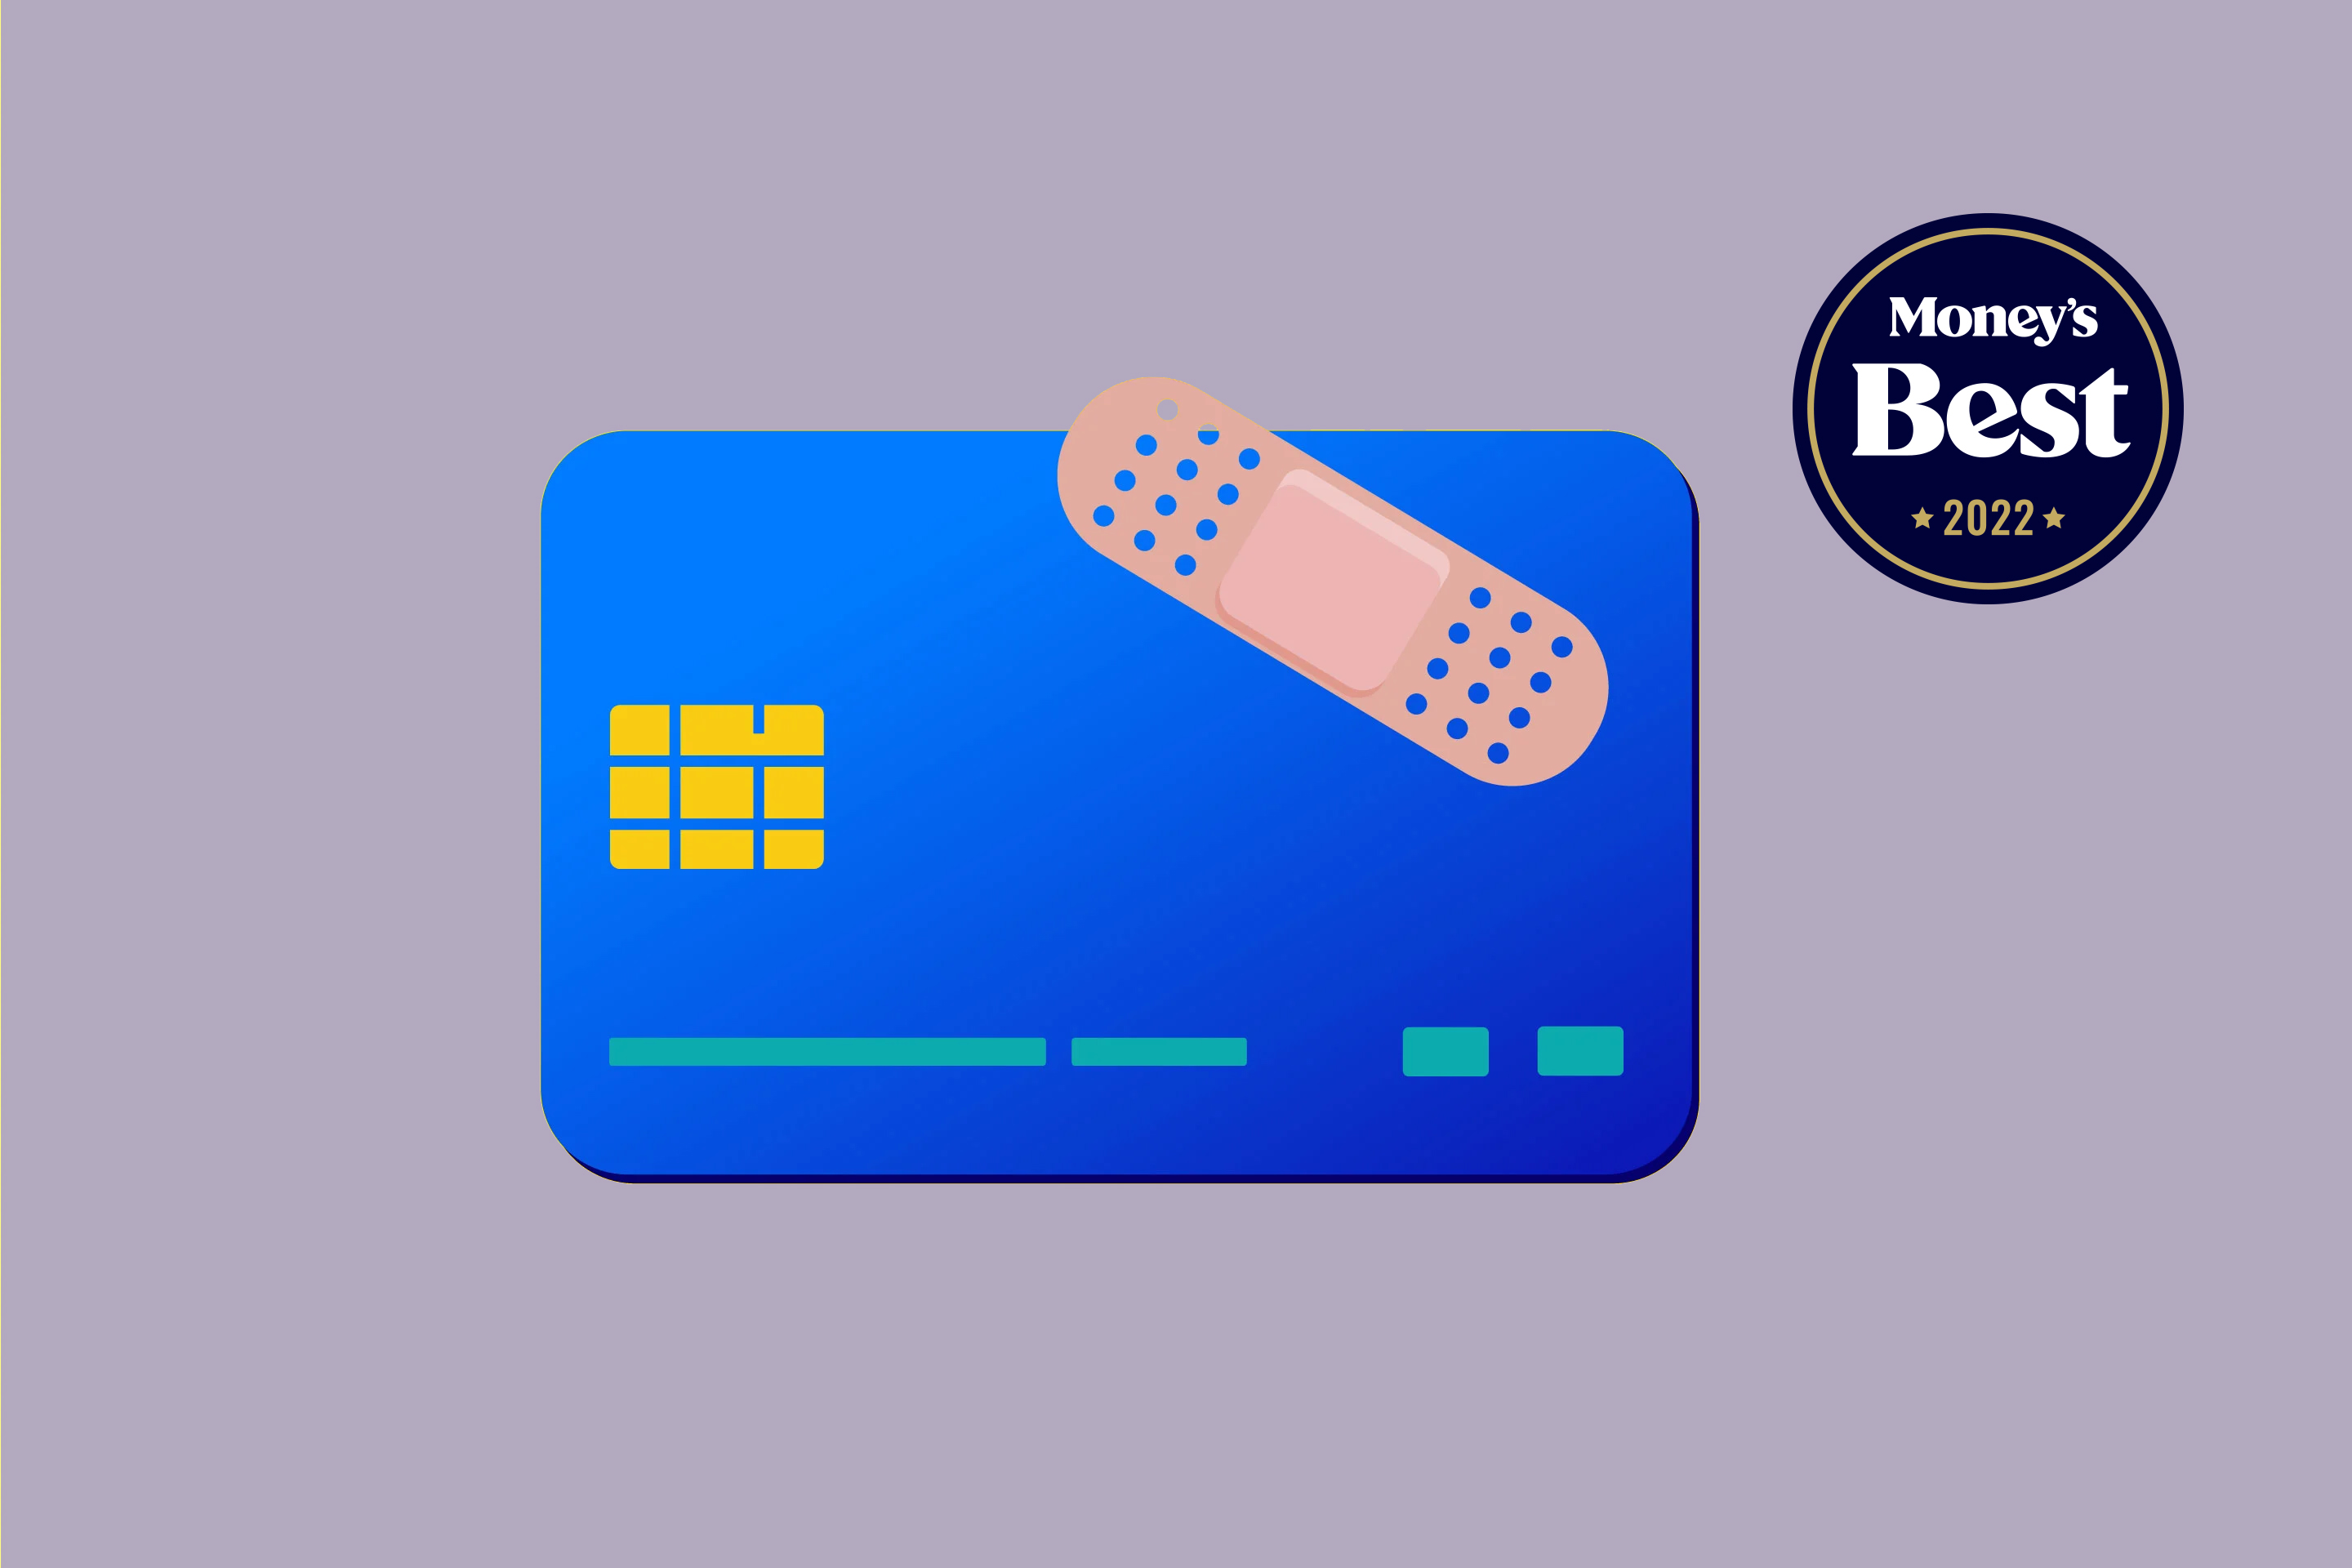 Best Bad Credit Credit Cards for November 2022